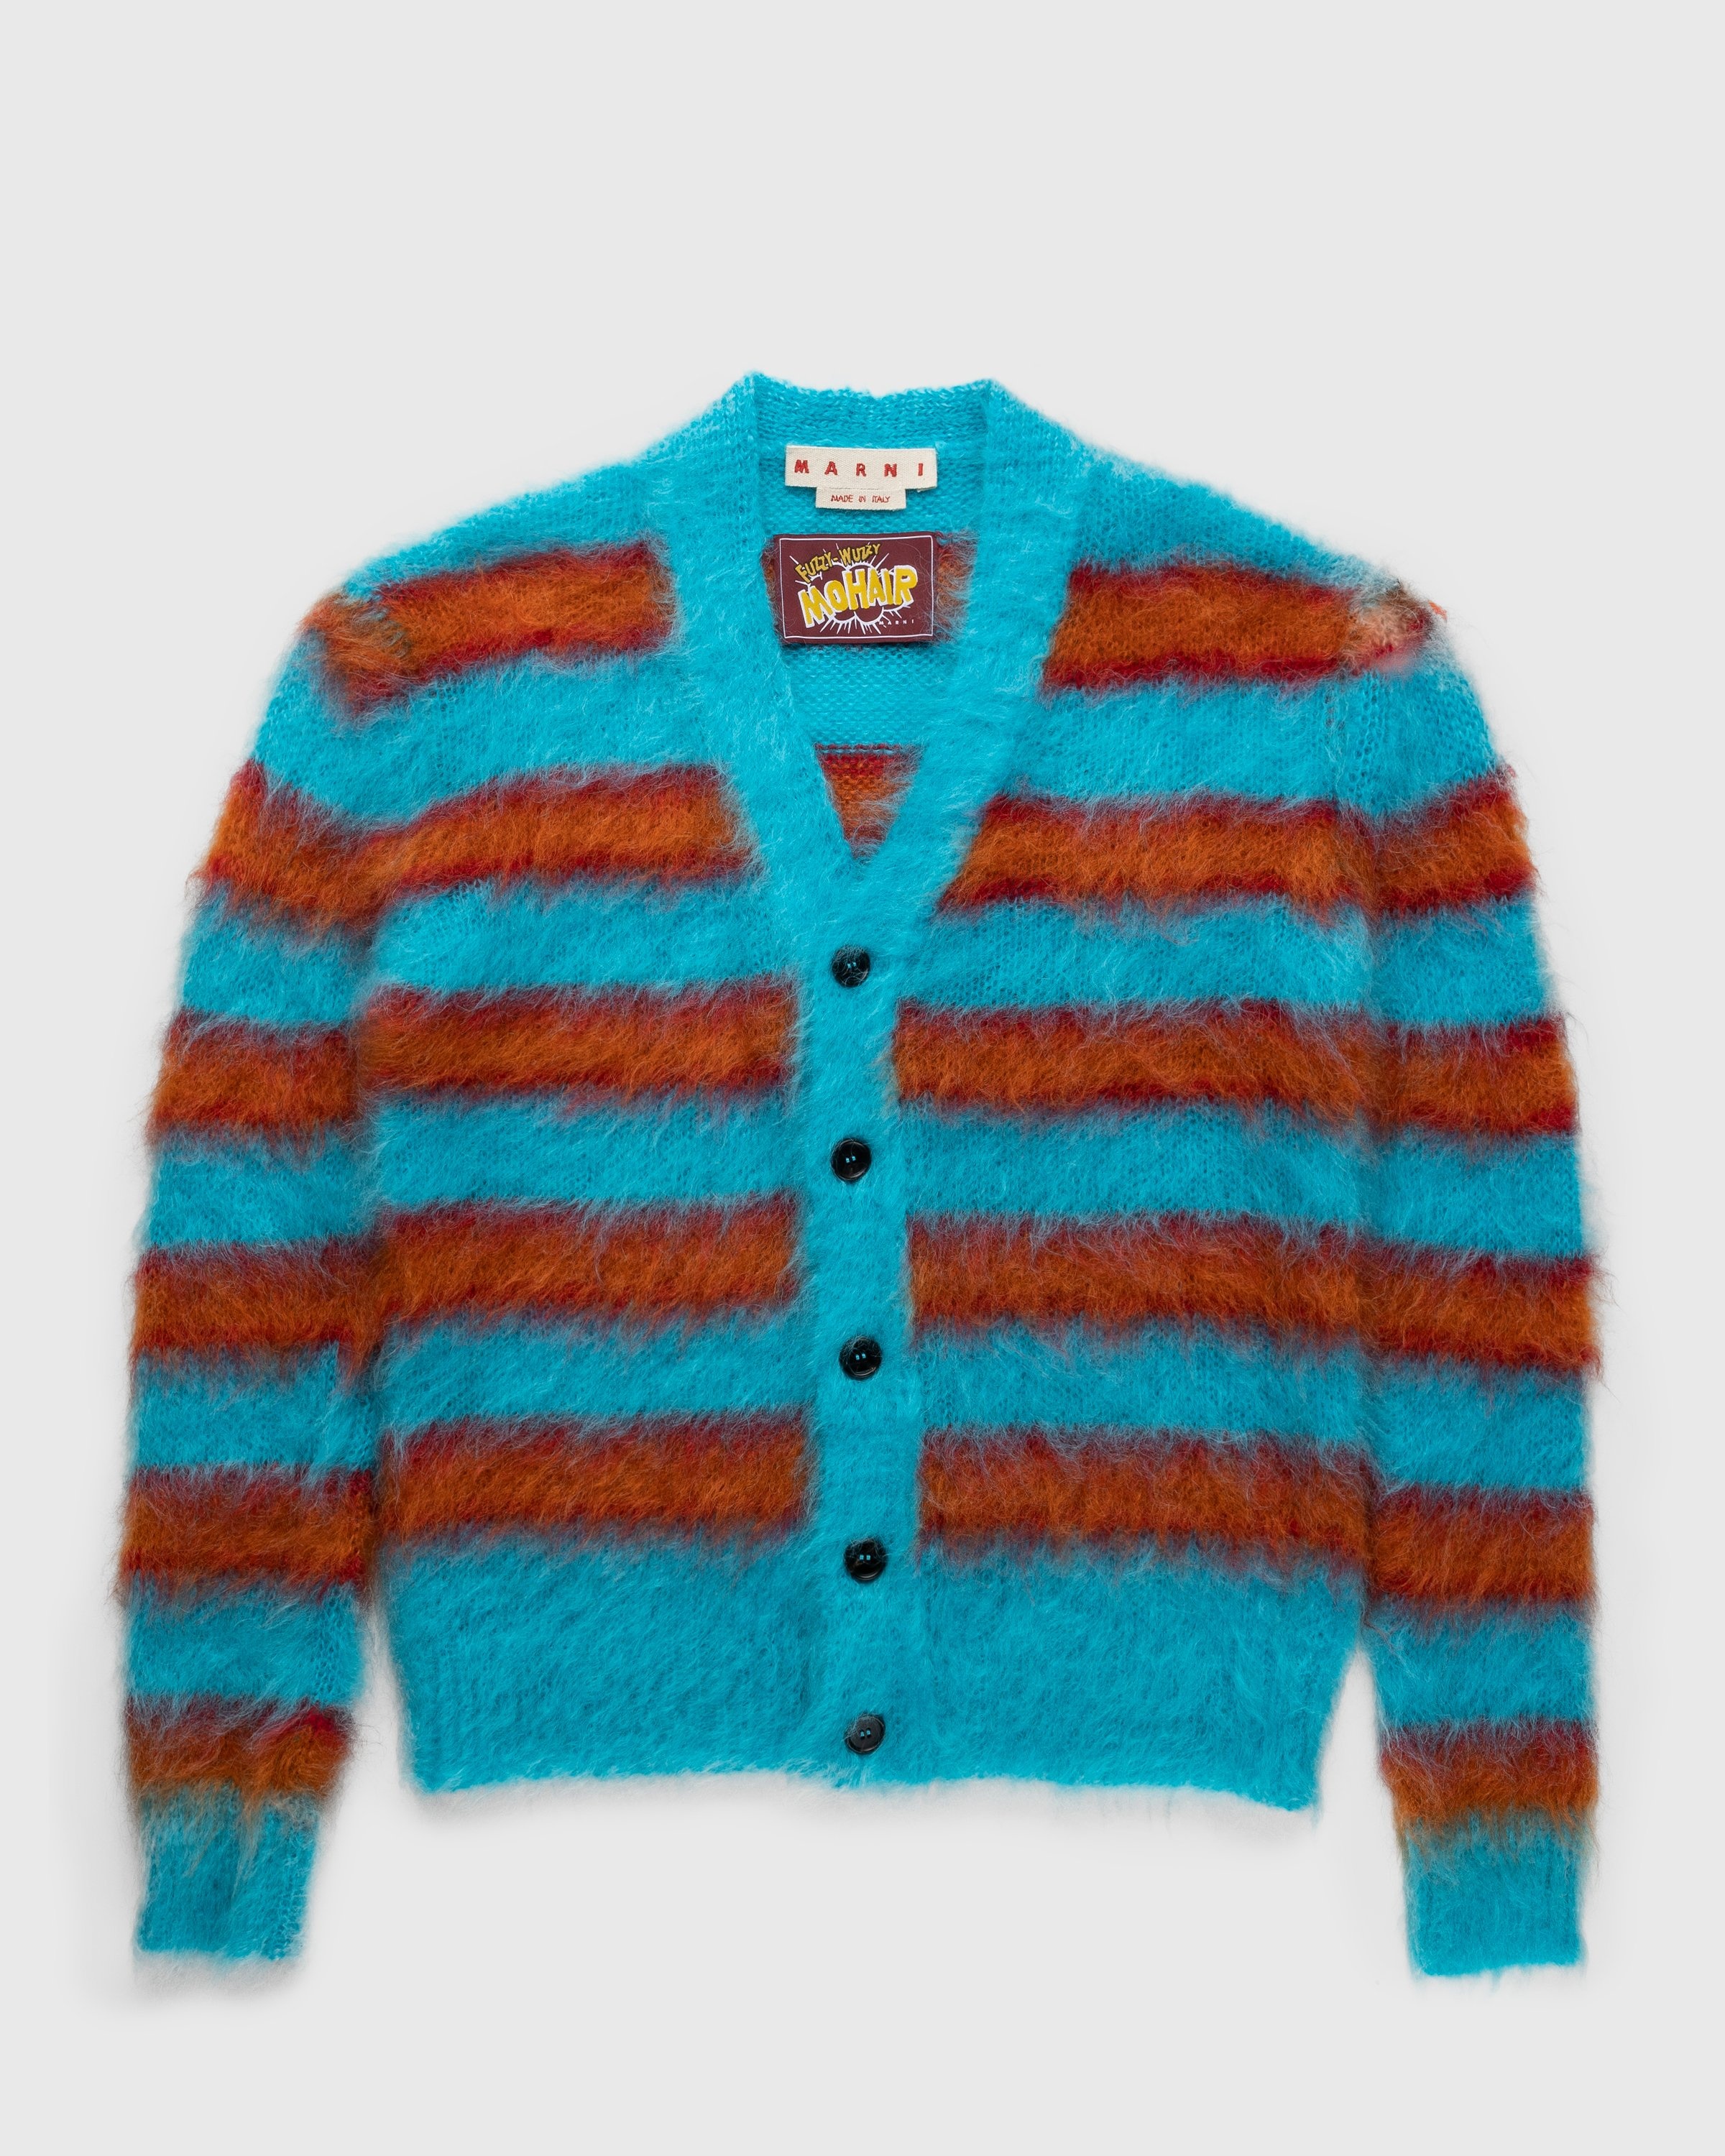 Marni – Striped Mohair Cardigan Multi - Knitwear - Multi - Image 1